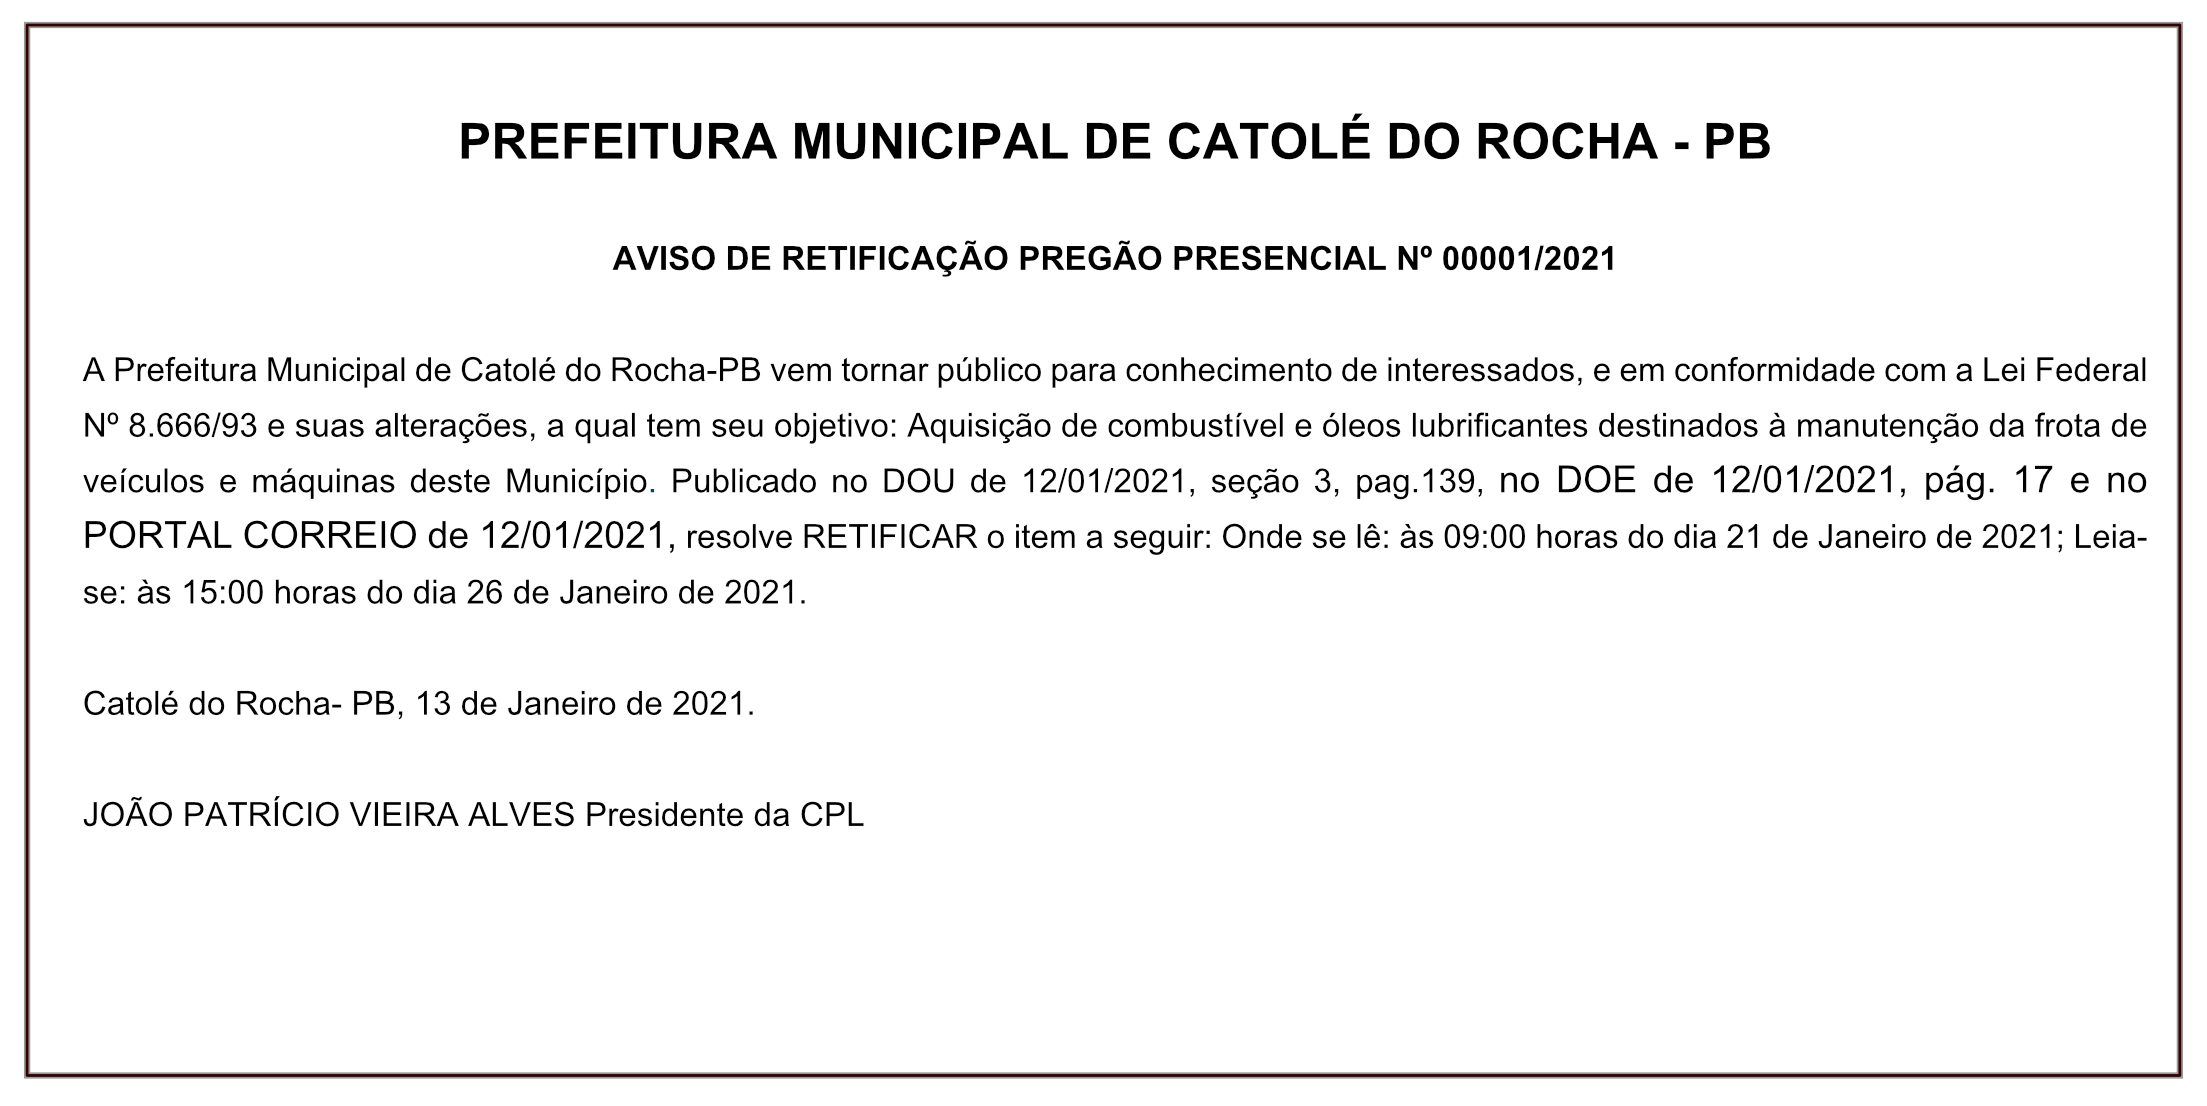 PREFEITURA MUNICIPAL DE CATOLÉ DO ROCHA – AVISO DE RETIFICAÇÃO – PREGÃO PRESENCIAL Nº 00001/2021